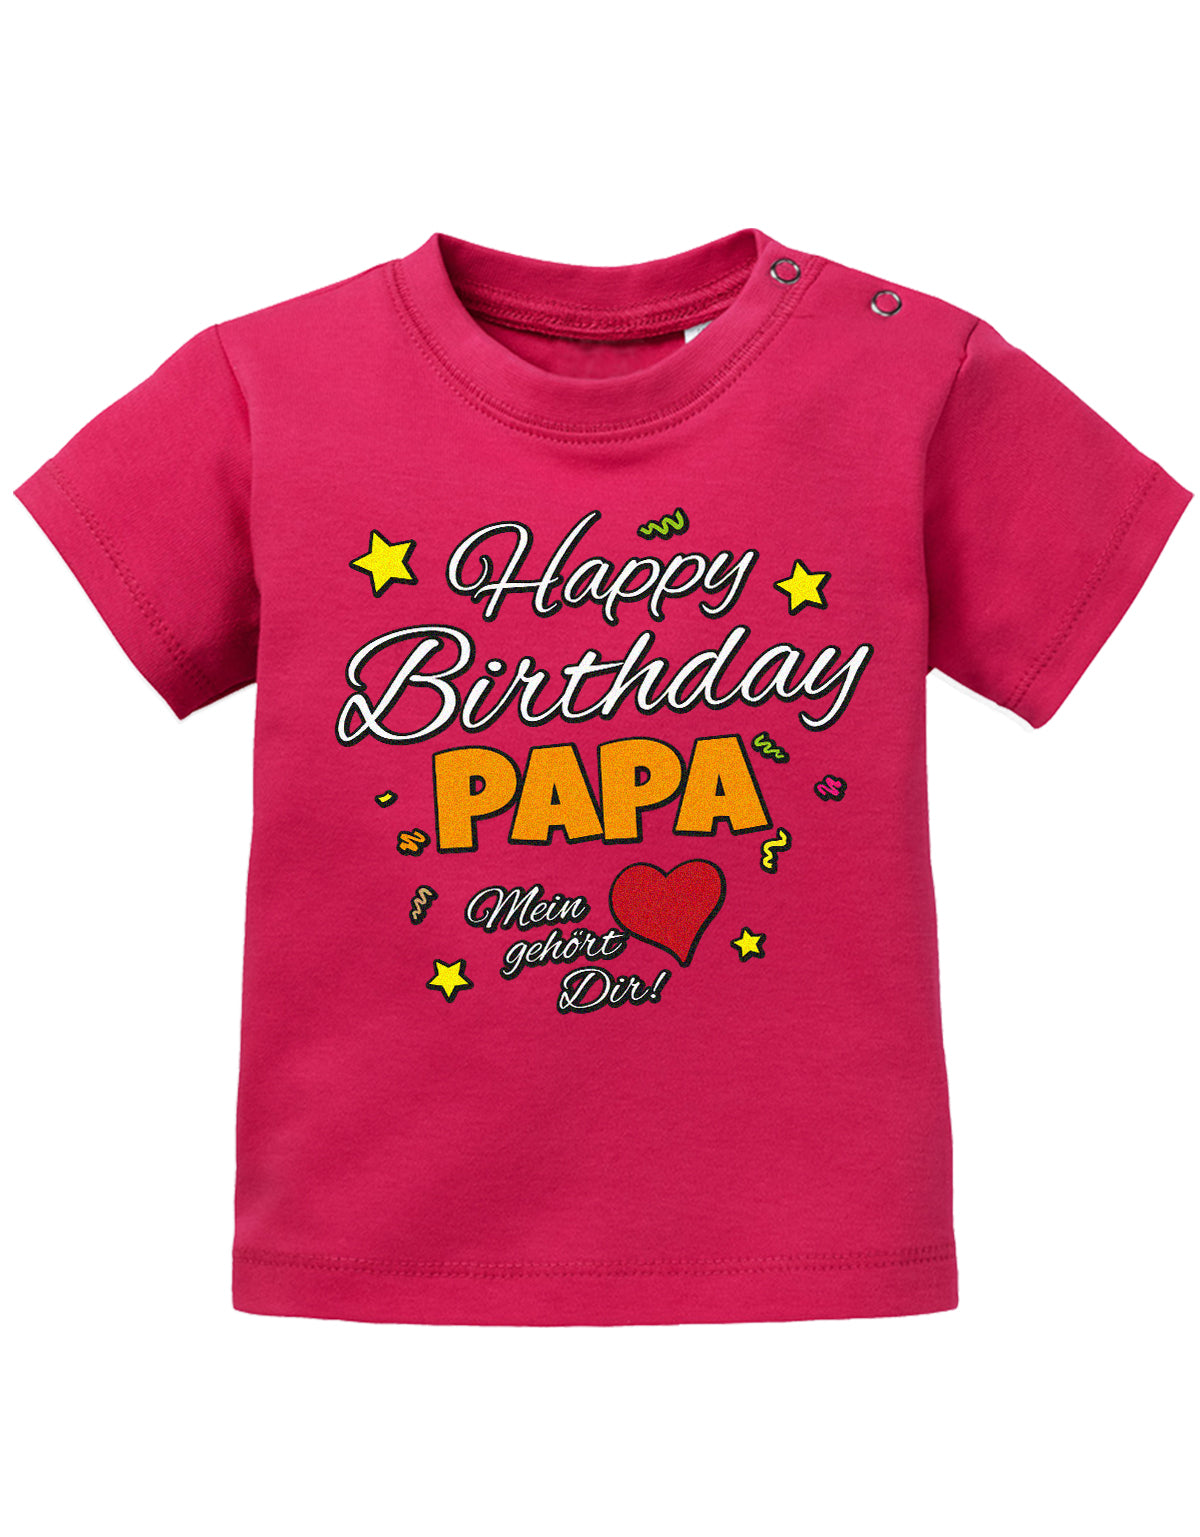 Papa Spruch Baby Shirt. Happy Birthday, Papa, mein Herz gehört Dir. Sorbet